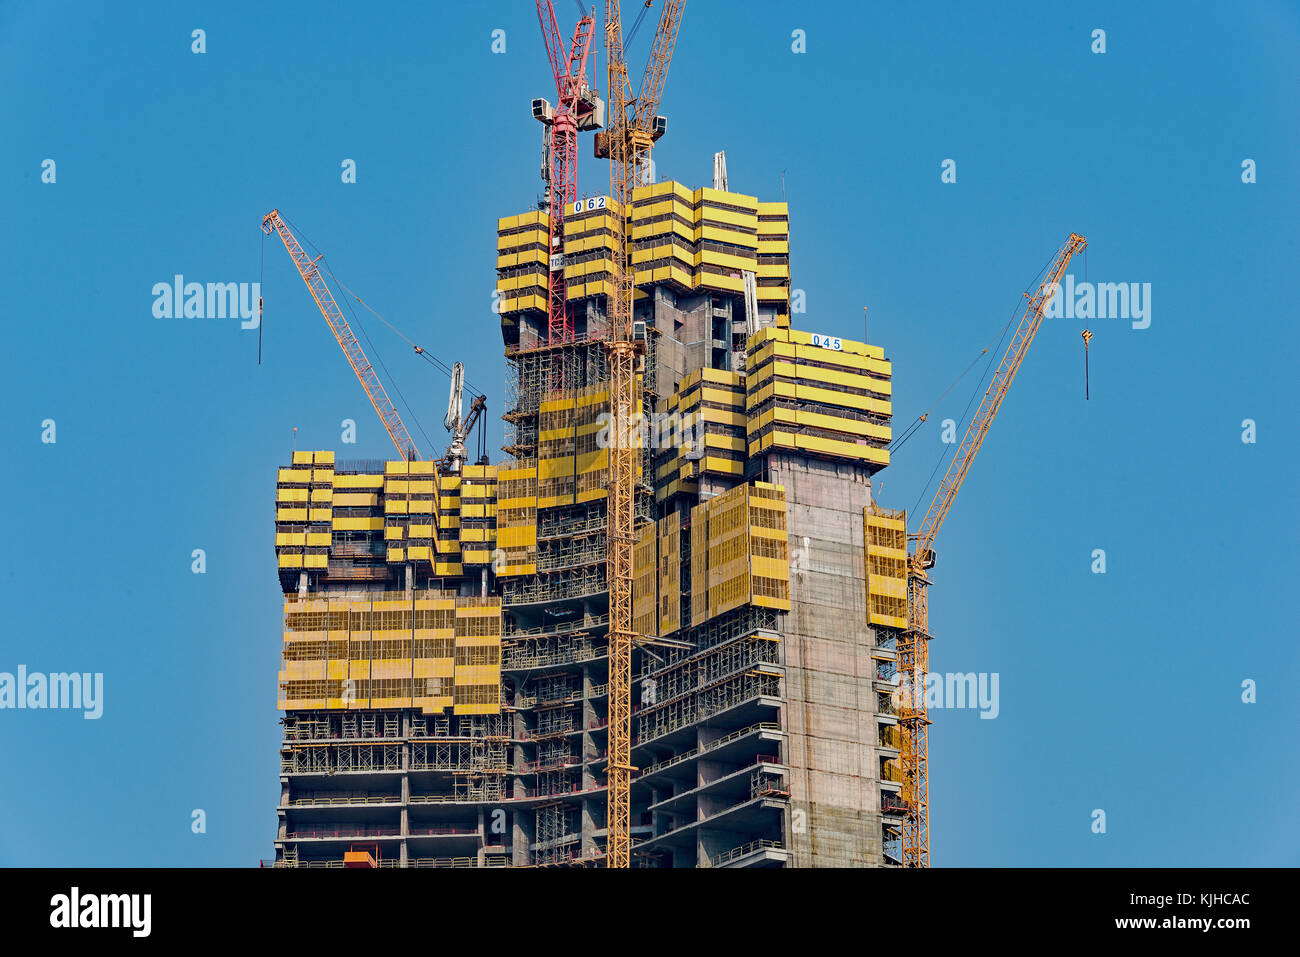 Il nuovo regno tower attualmente in costruzione nel nord di jeddah, Arabia saudita. Foto Stock